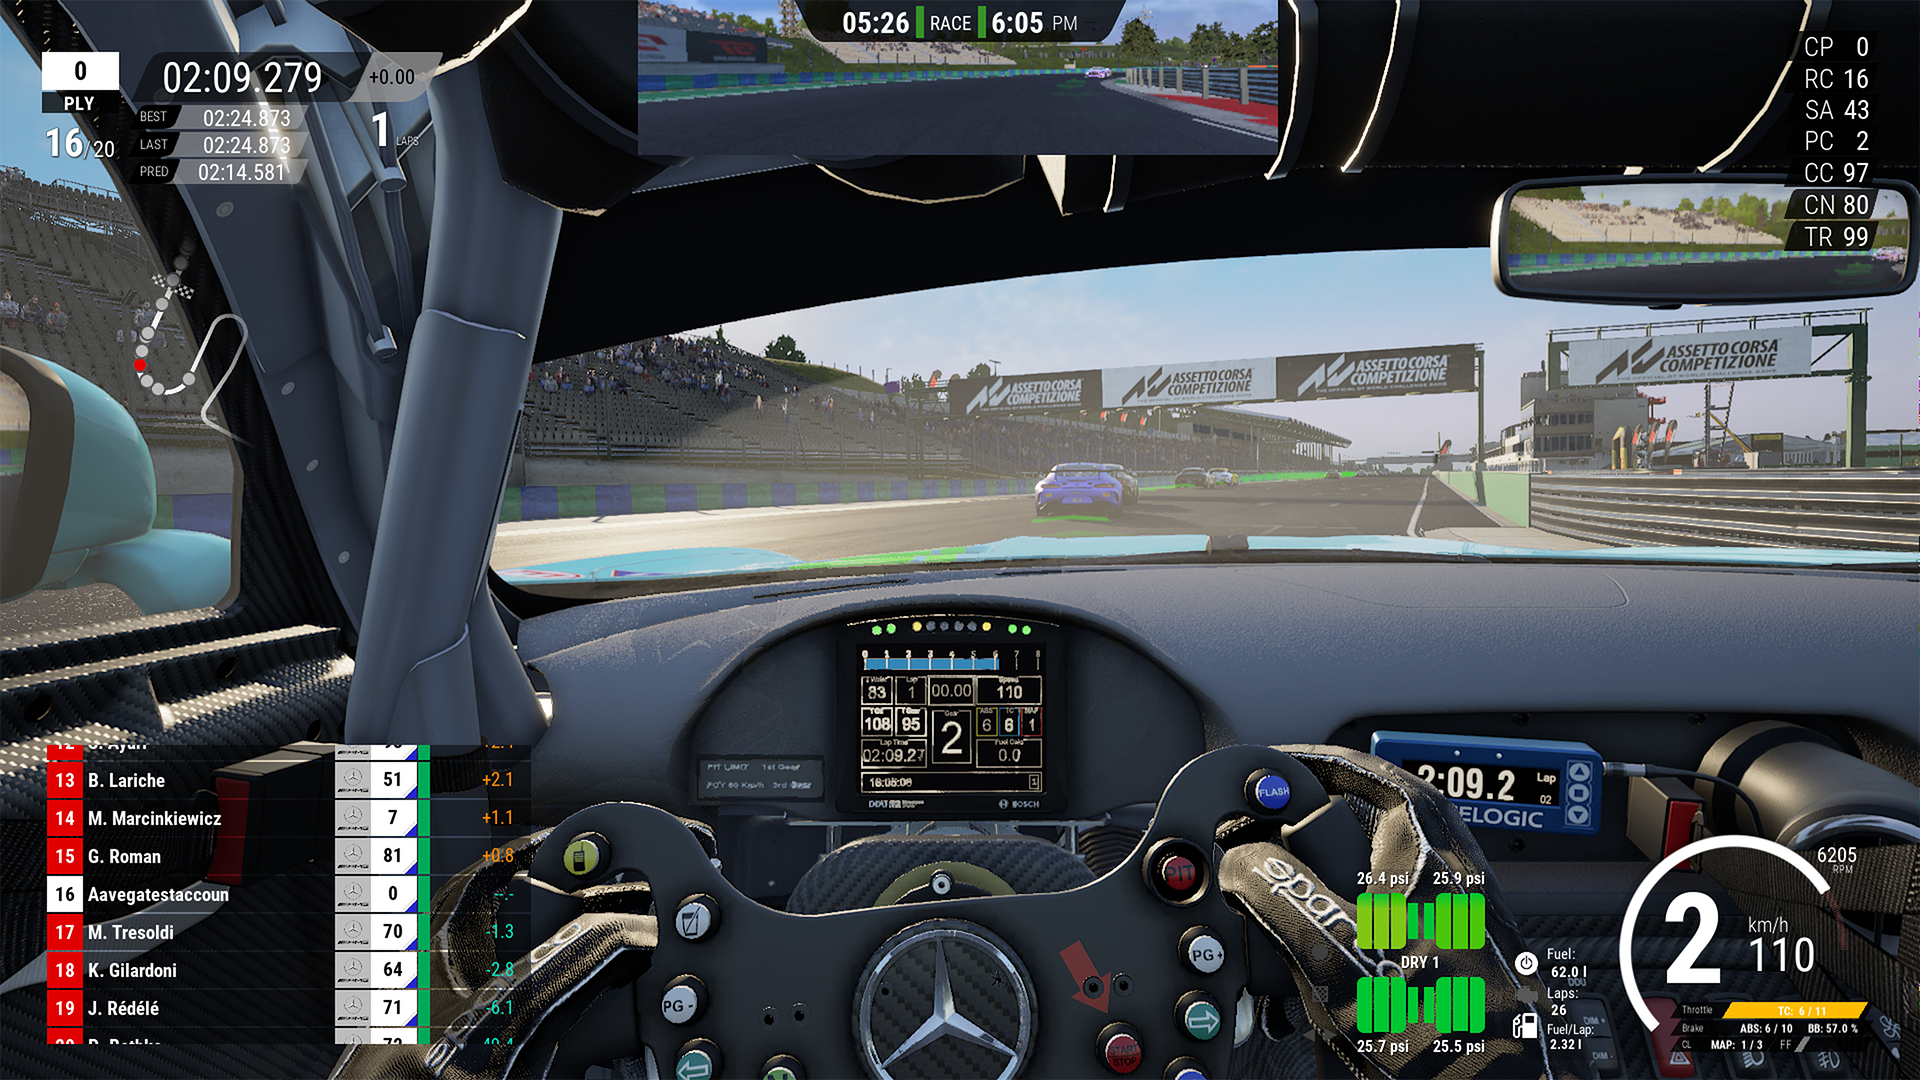 Assetto Corsa Competizione - PC Game –